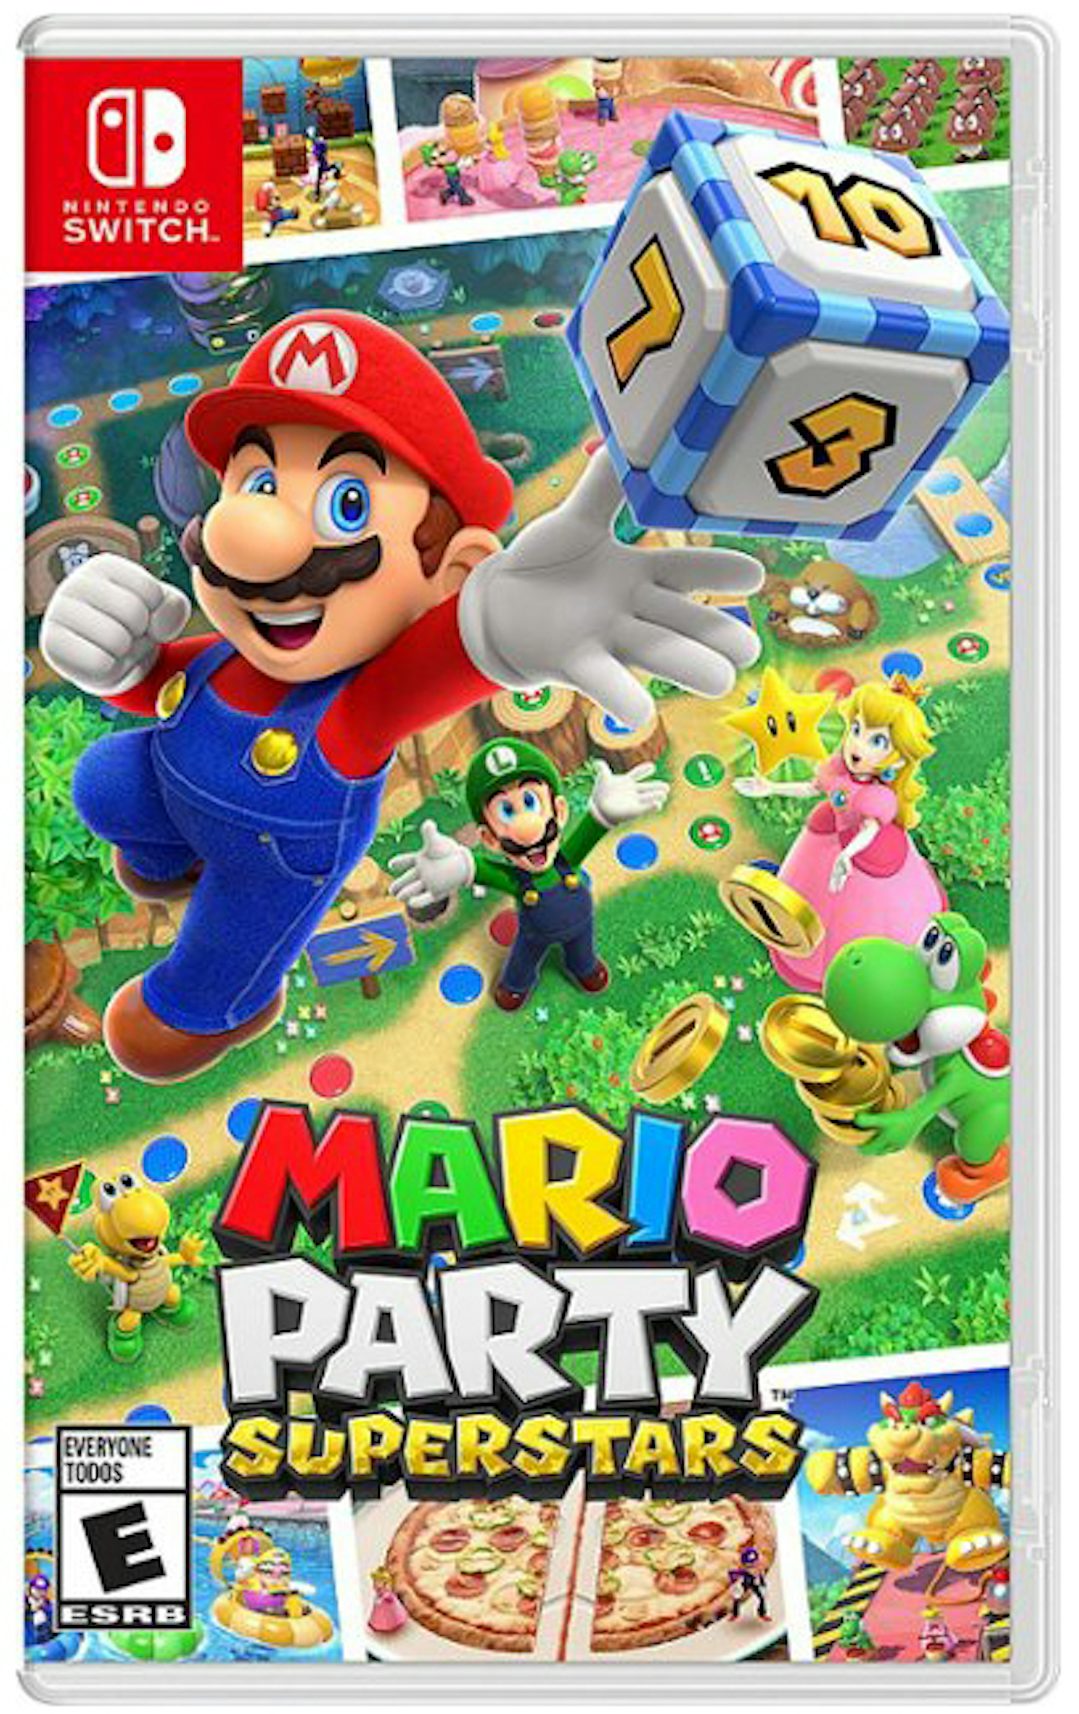 Mario Party Superstars Vs Super Mario Party